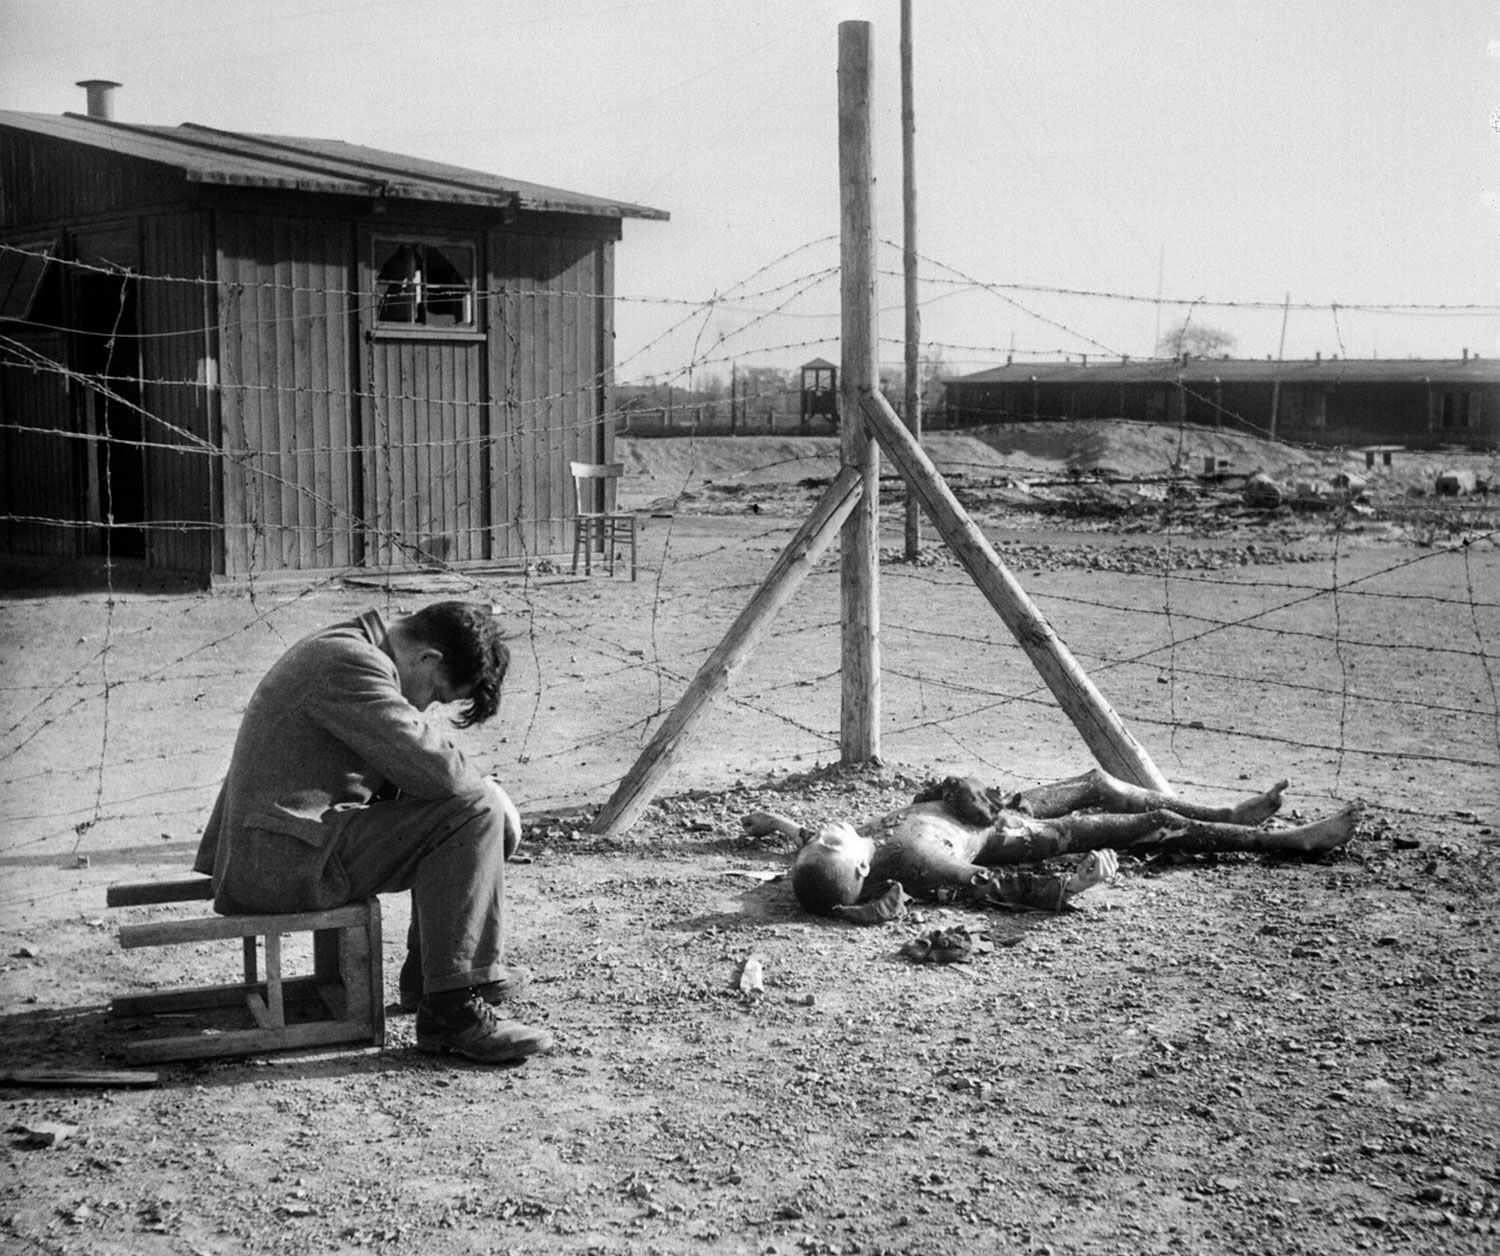 обуглившееся тело в лагере Текла недалеко от Лейпцига, фото второй мировой войны